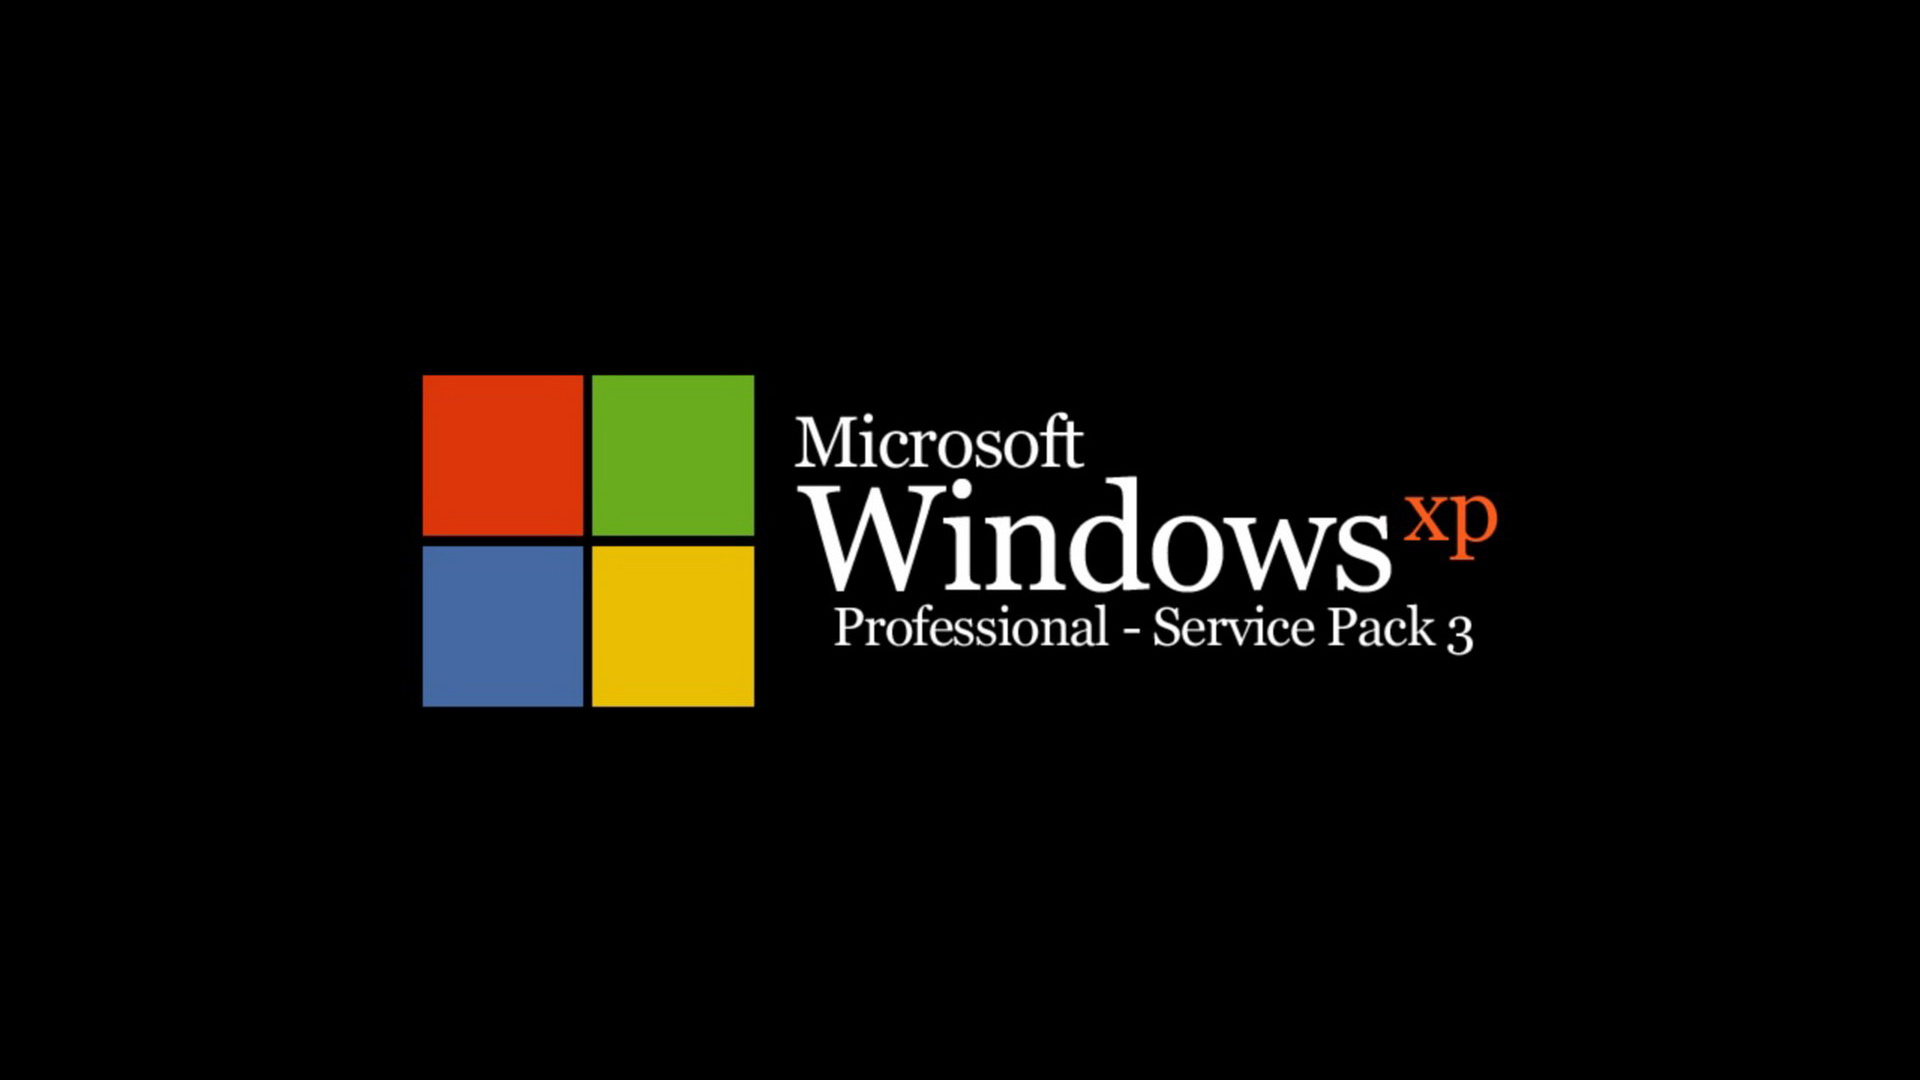 Windows Xp, Microsoft Windows, Firmenzeichen, Text, Grafik-design. Wallpaper in 1920x1080 Resolution